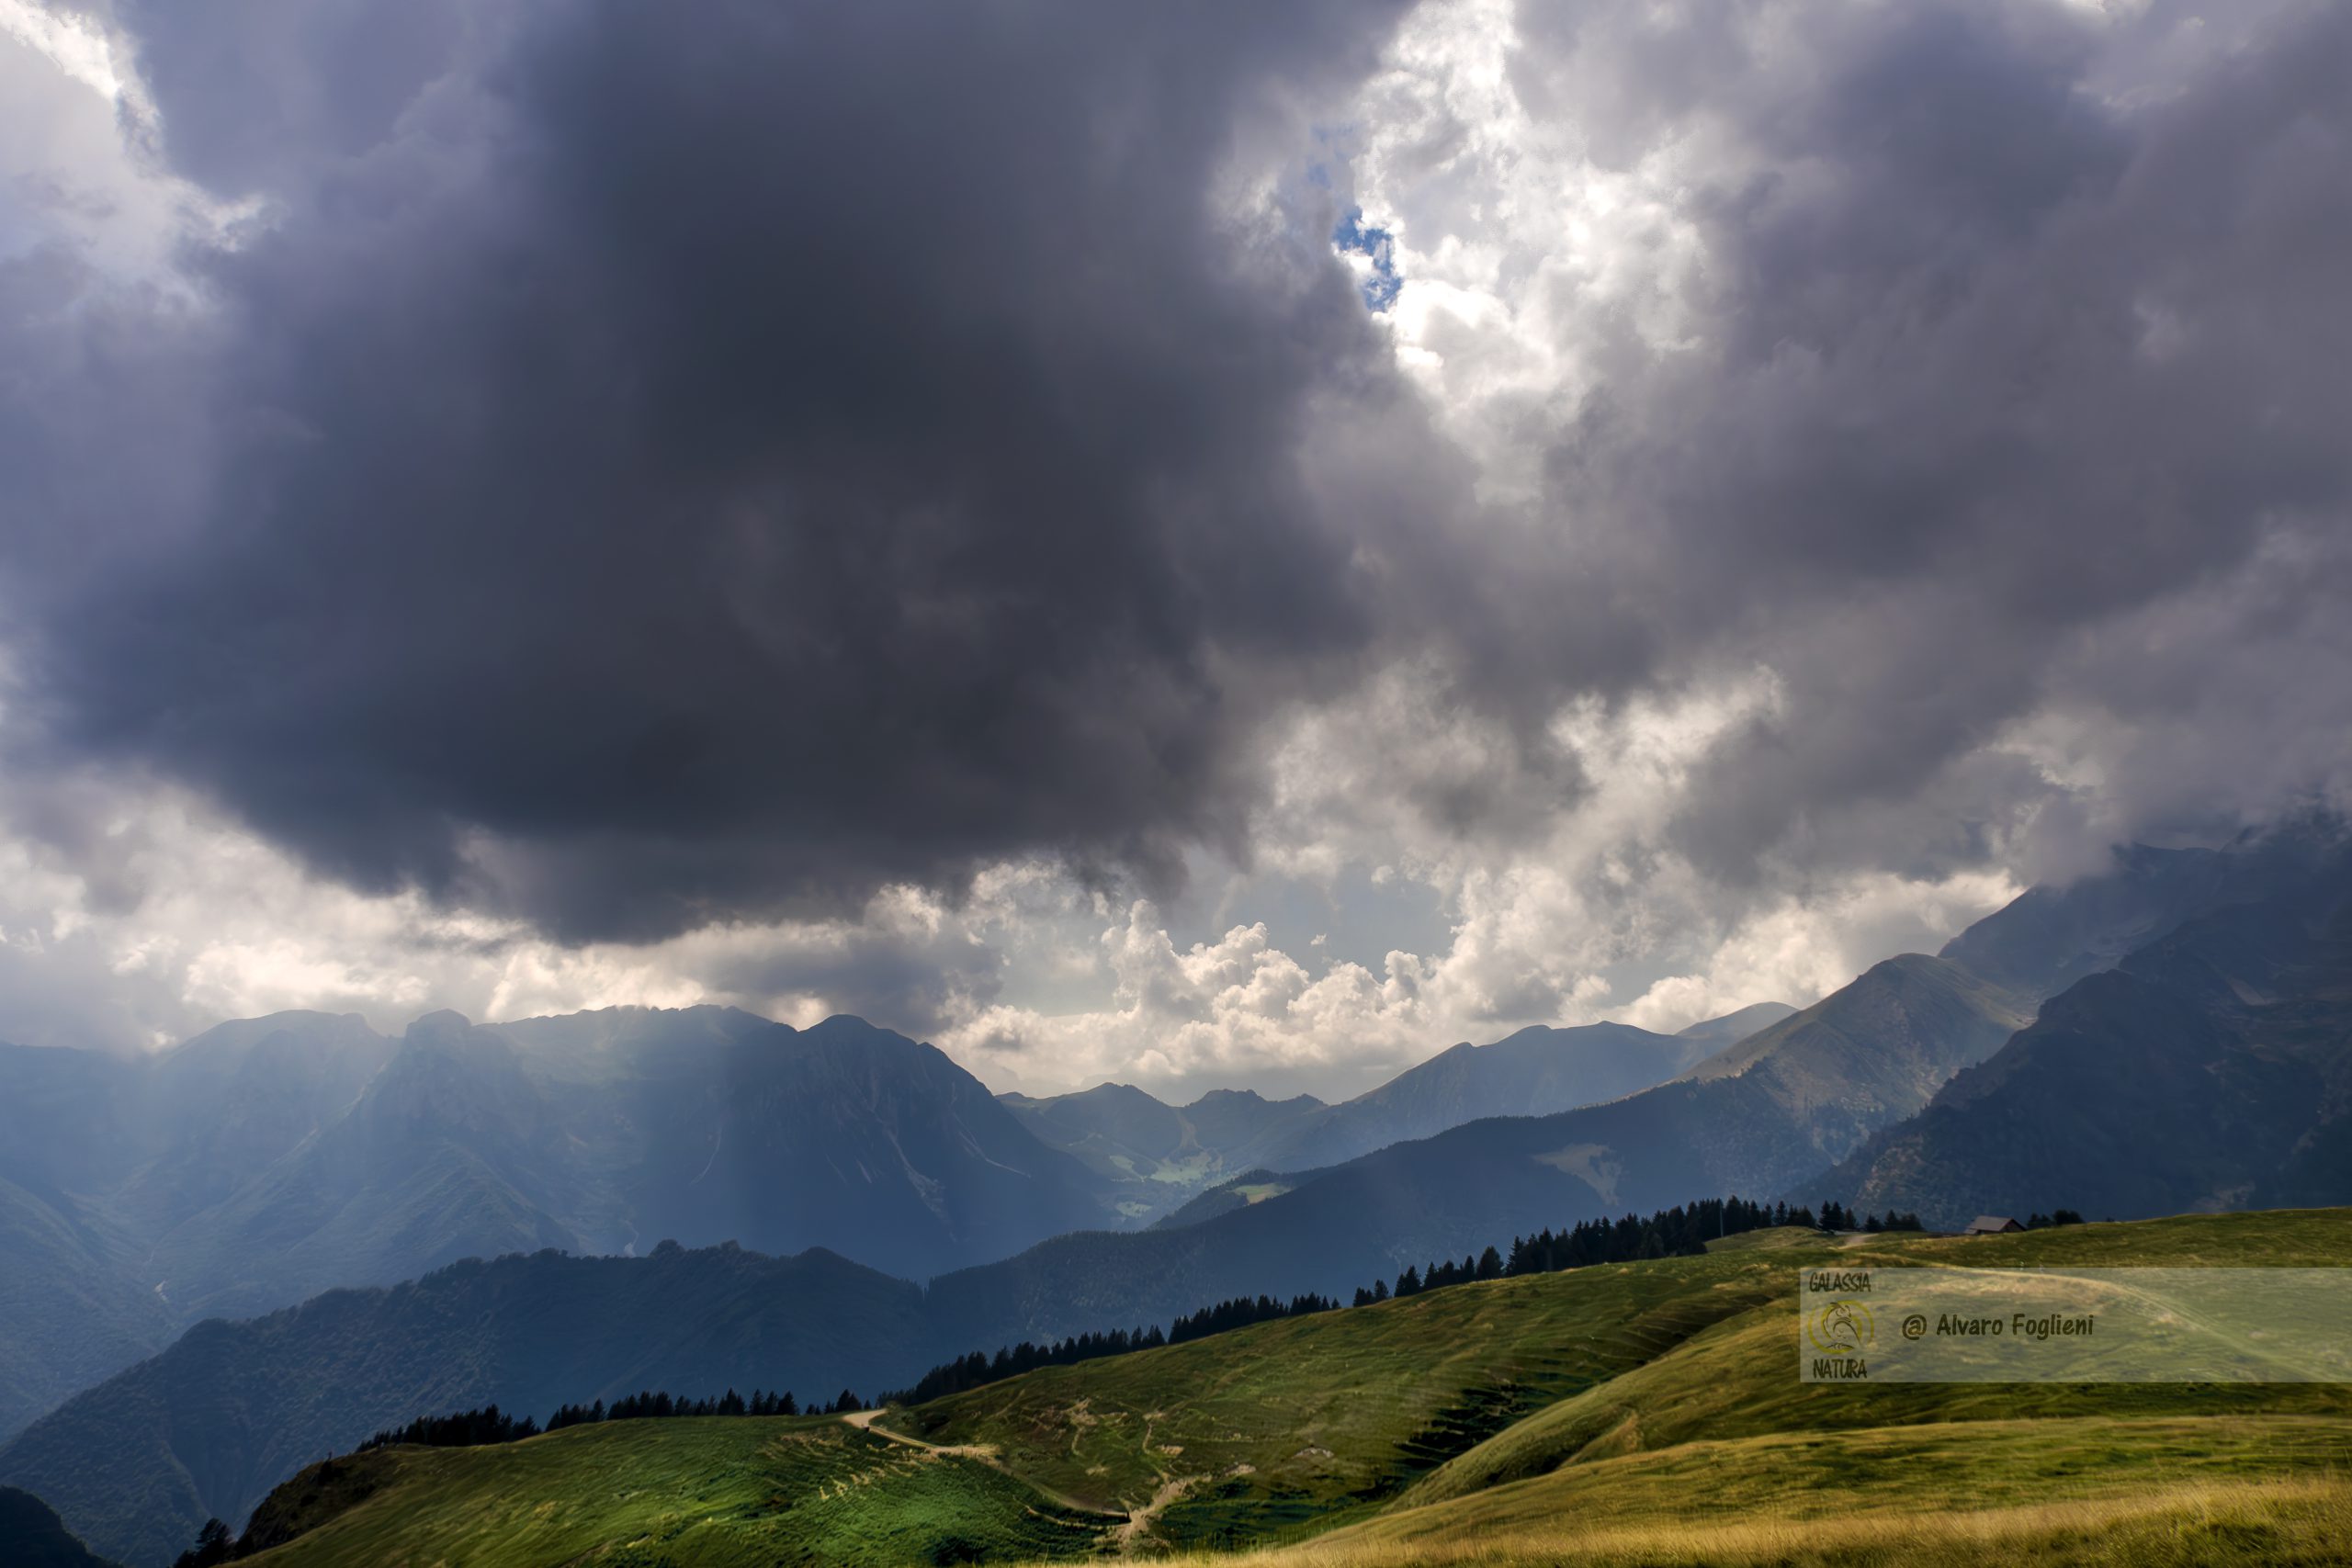 Scopri come le condizioni meteorologiche possono trasformare il paesaggio e migliorare le tue composizioni di fotografia di montagna.